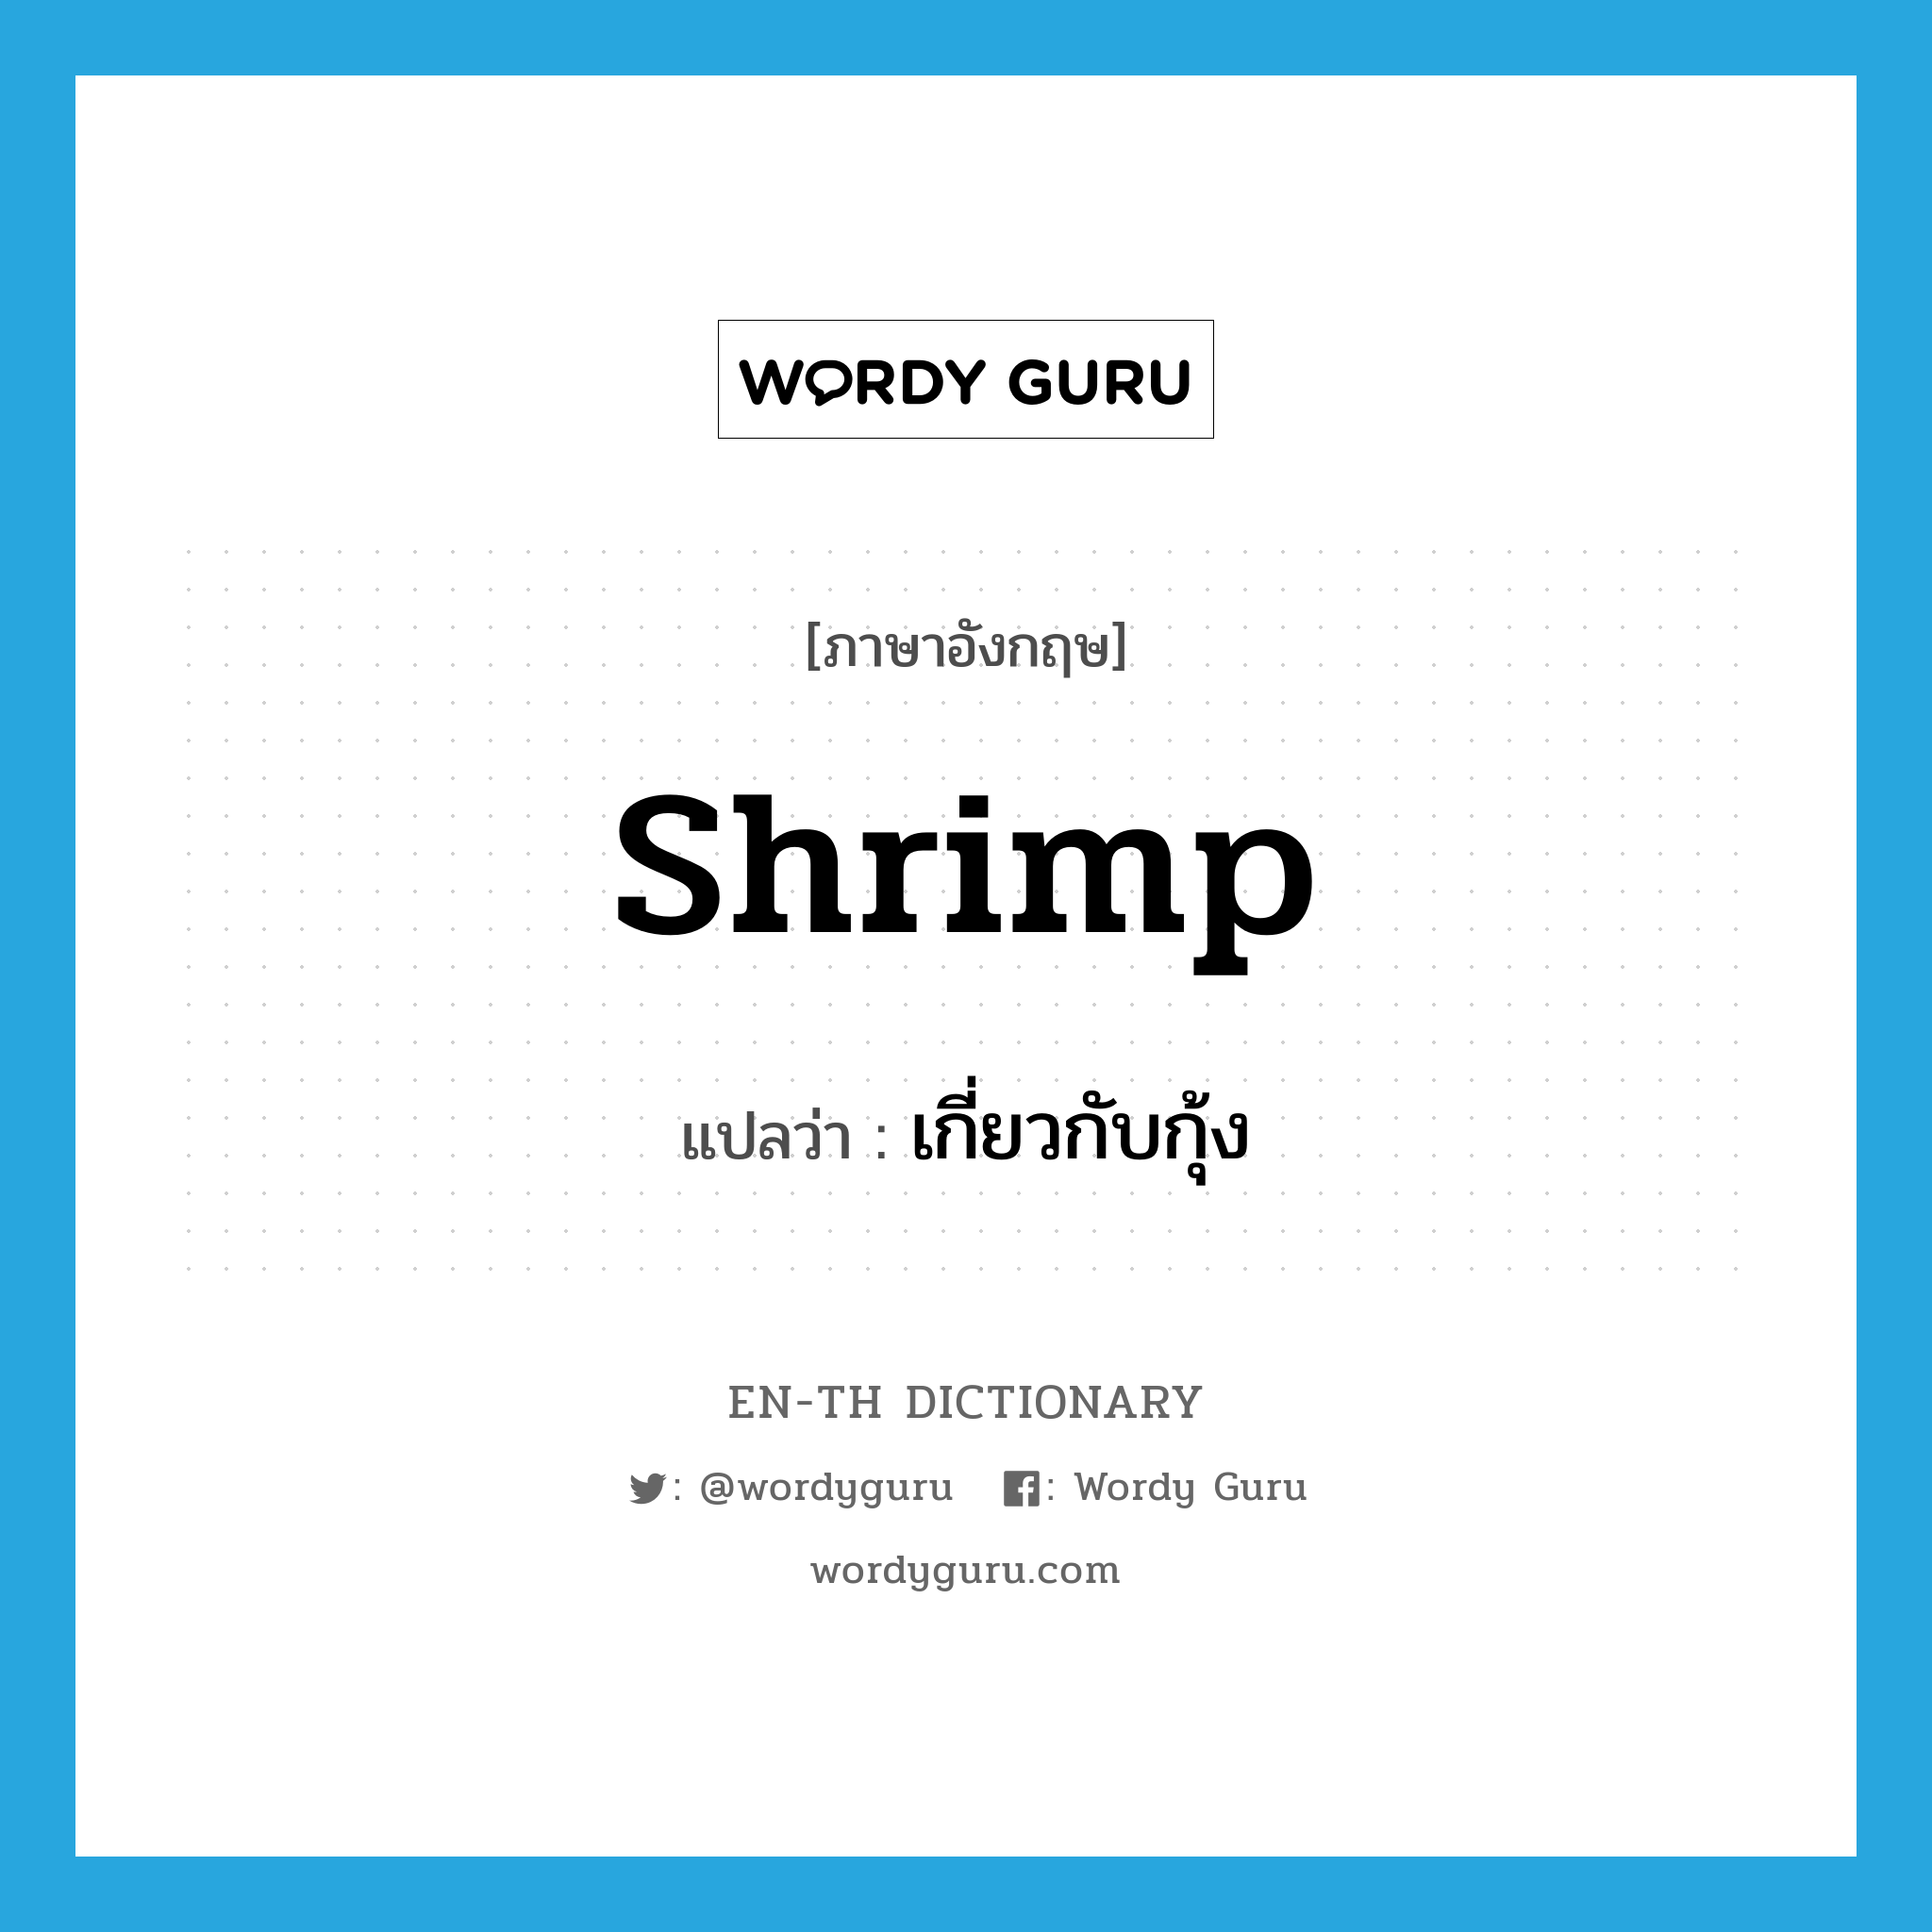 เกี่ยวกับกุ้ง ภาษาอังกฤษ?, คำศัพท์ภาษาอังกฤษ เกี่ยวกับกุ้ง แปลว่า shrimp ประเภท ADJ หมวด ADJ